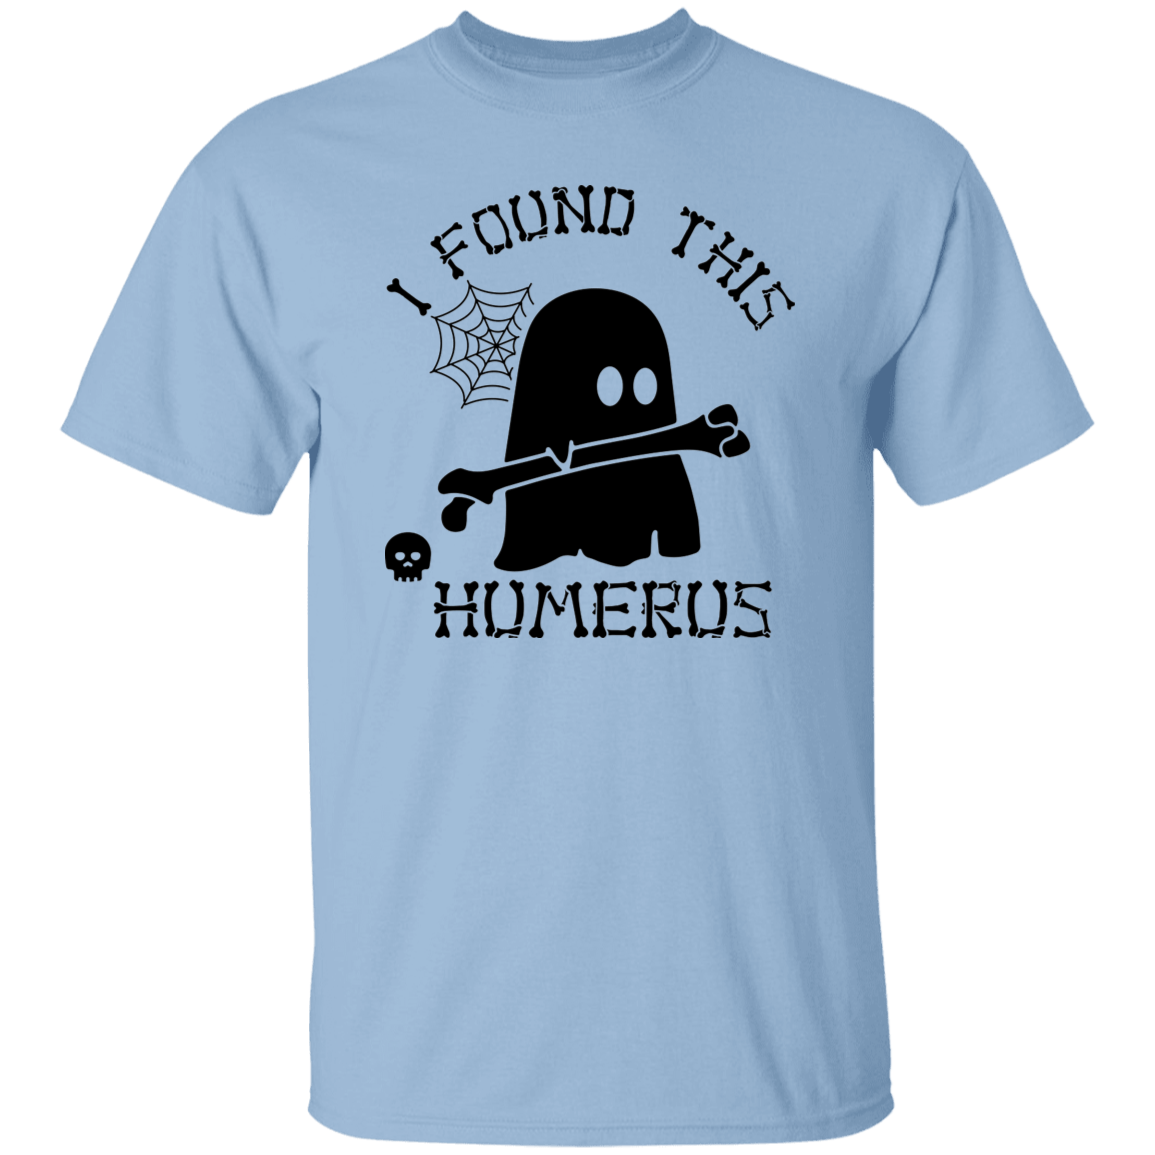 Humerus T-Shirt